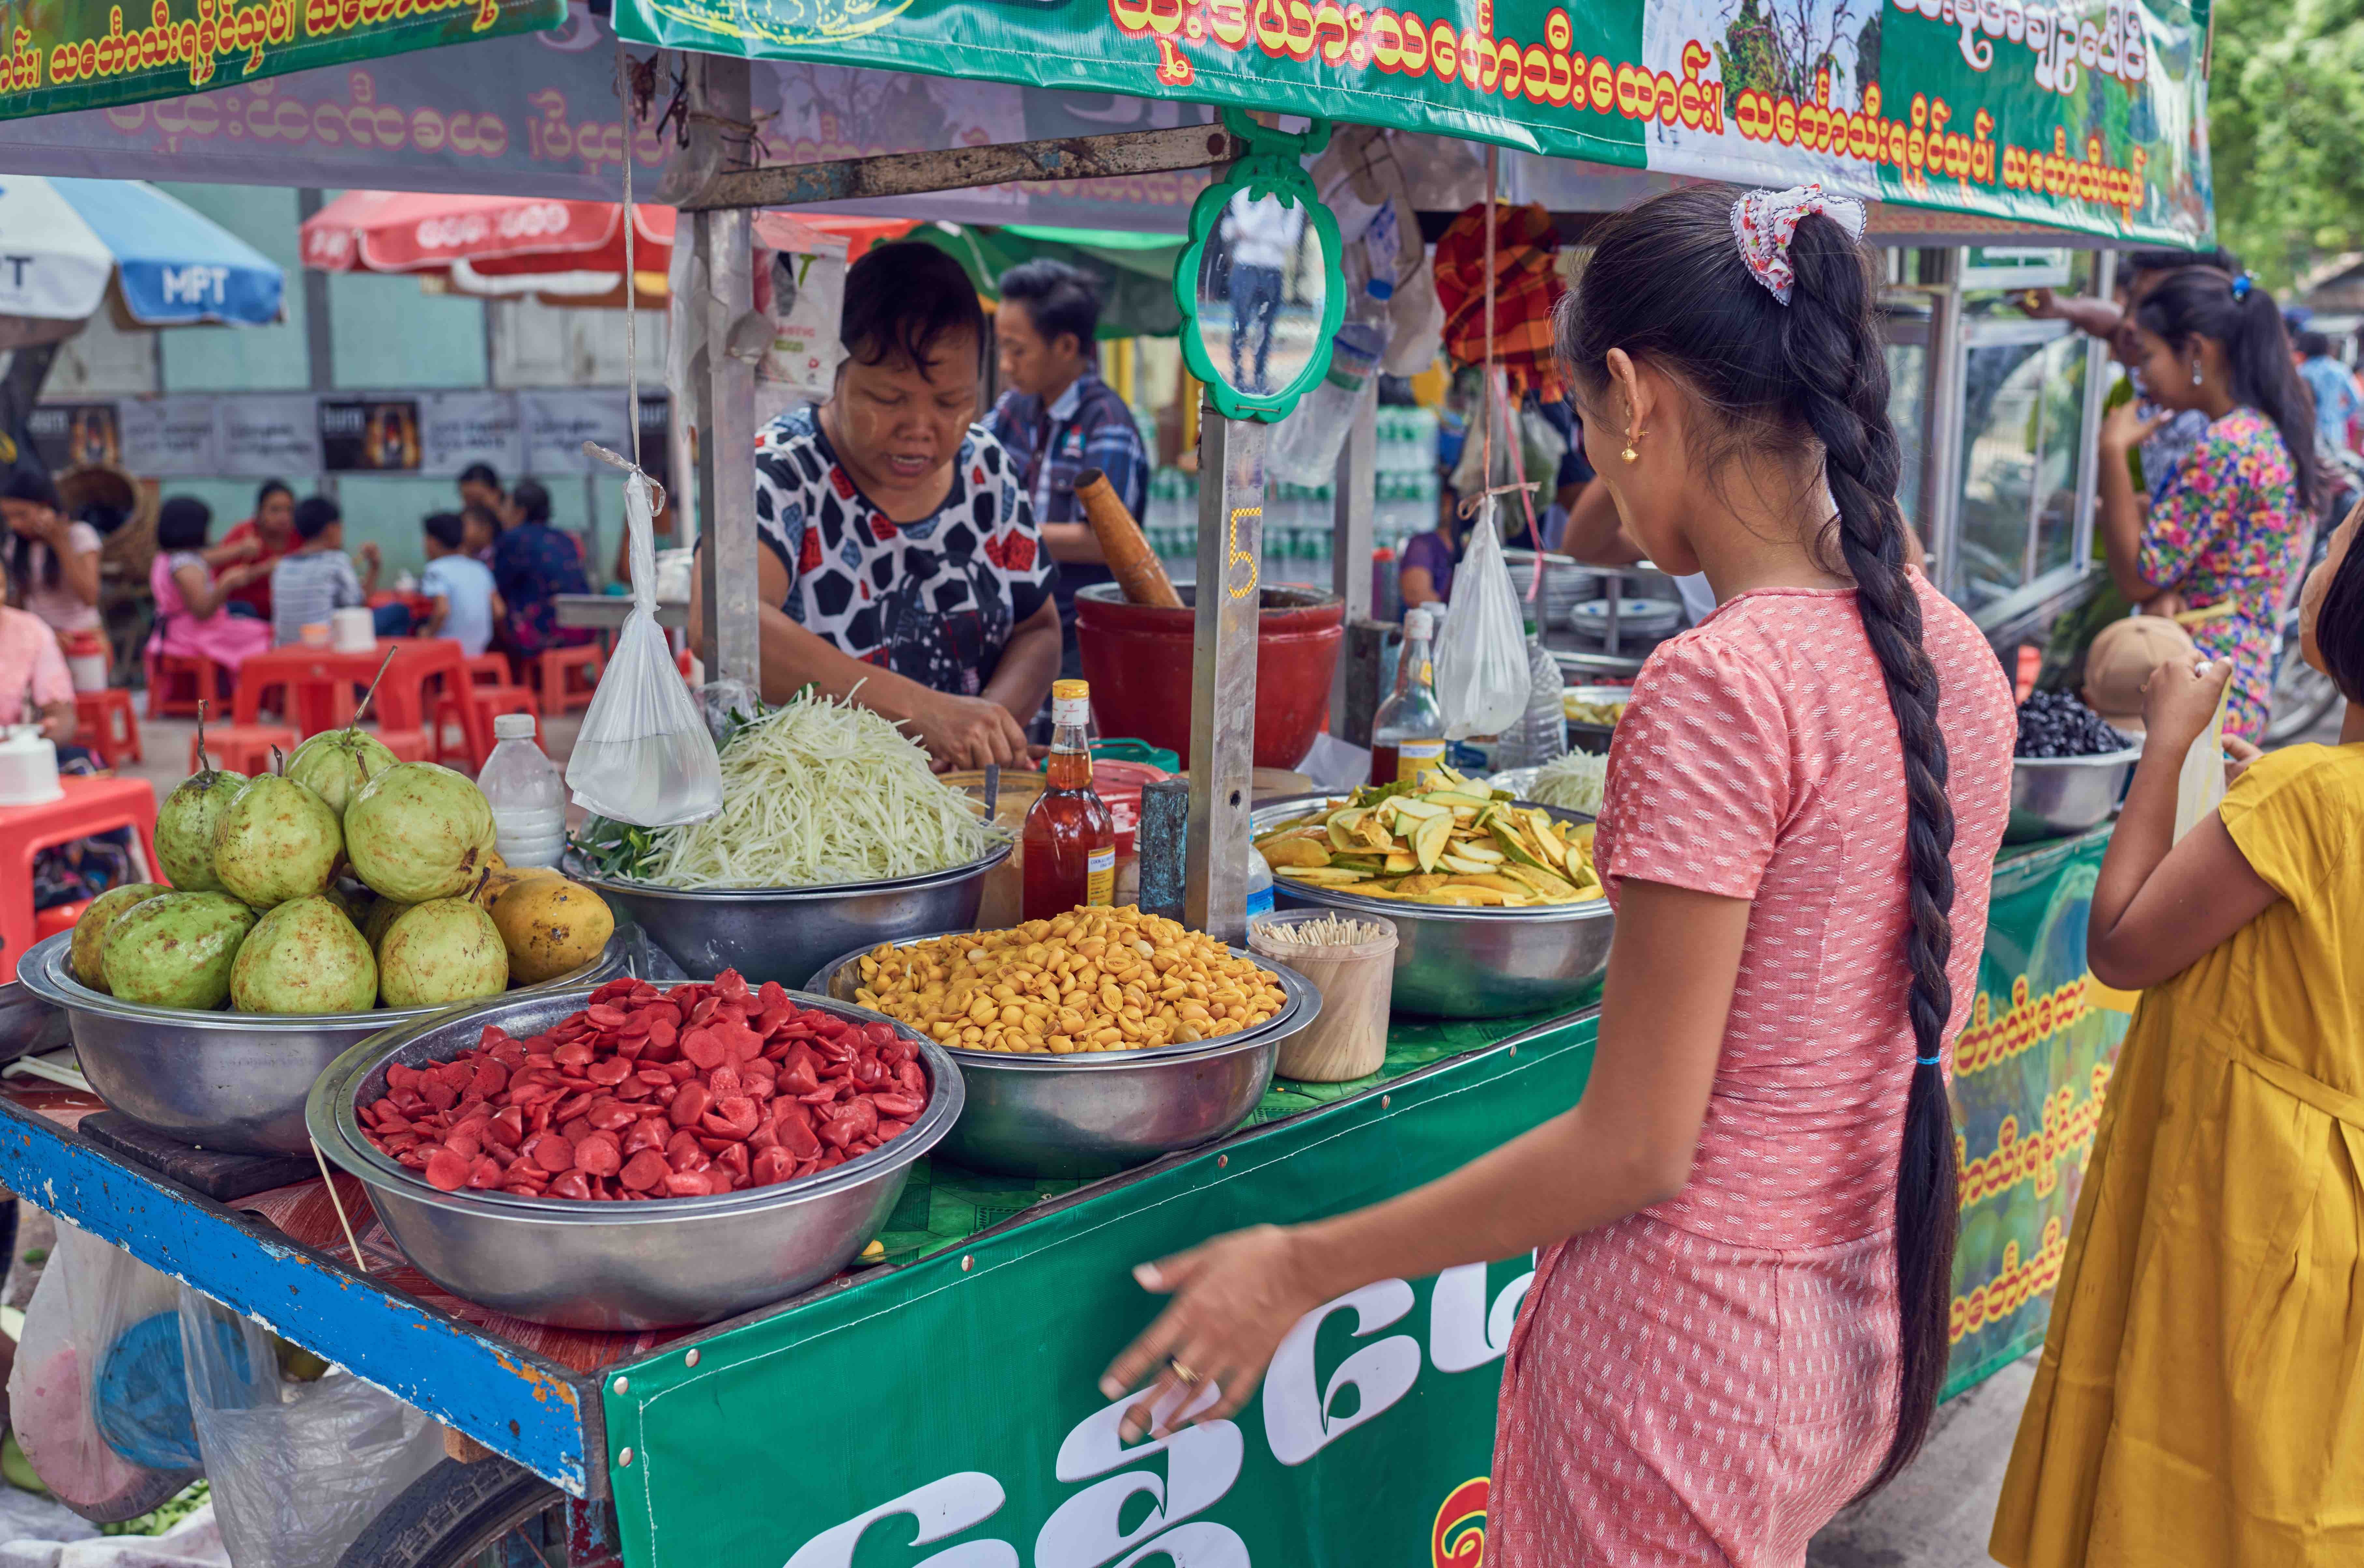 流传于缅甸街头传统小吃,与中国民间美食相似,传承古老民俗文化